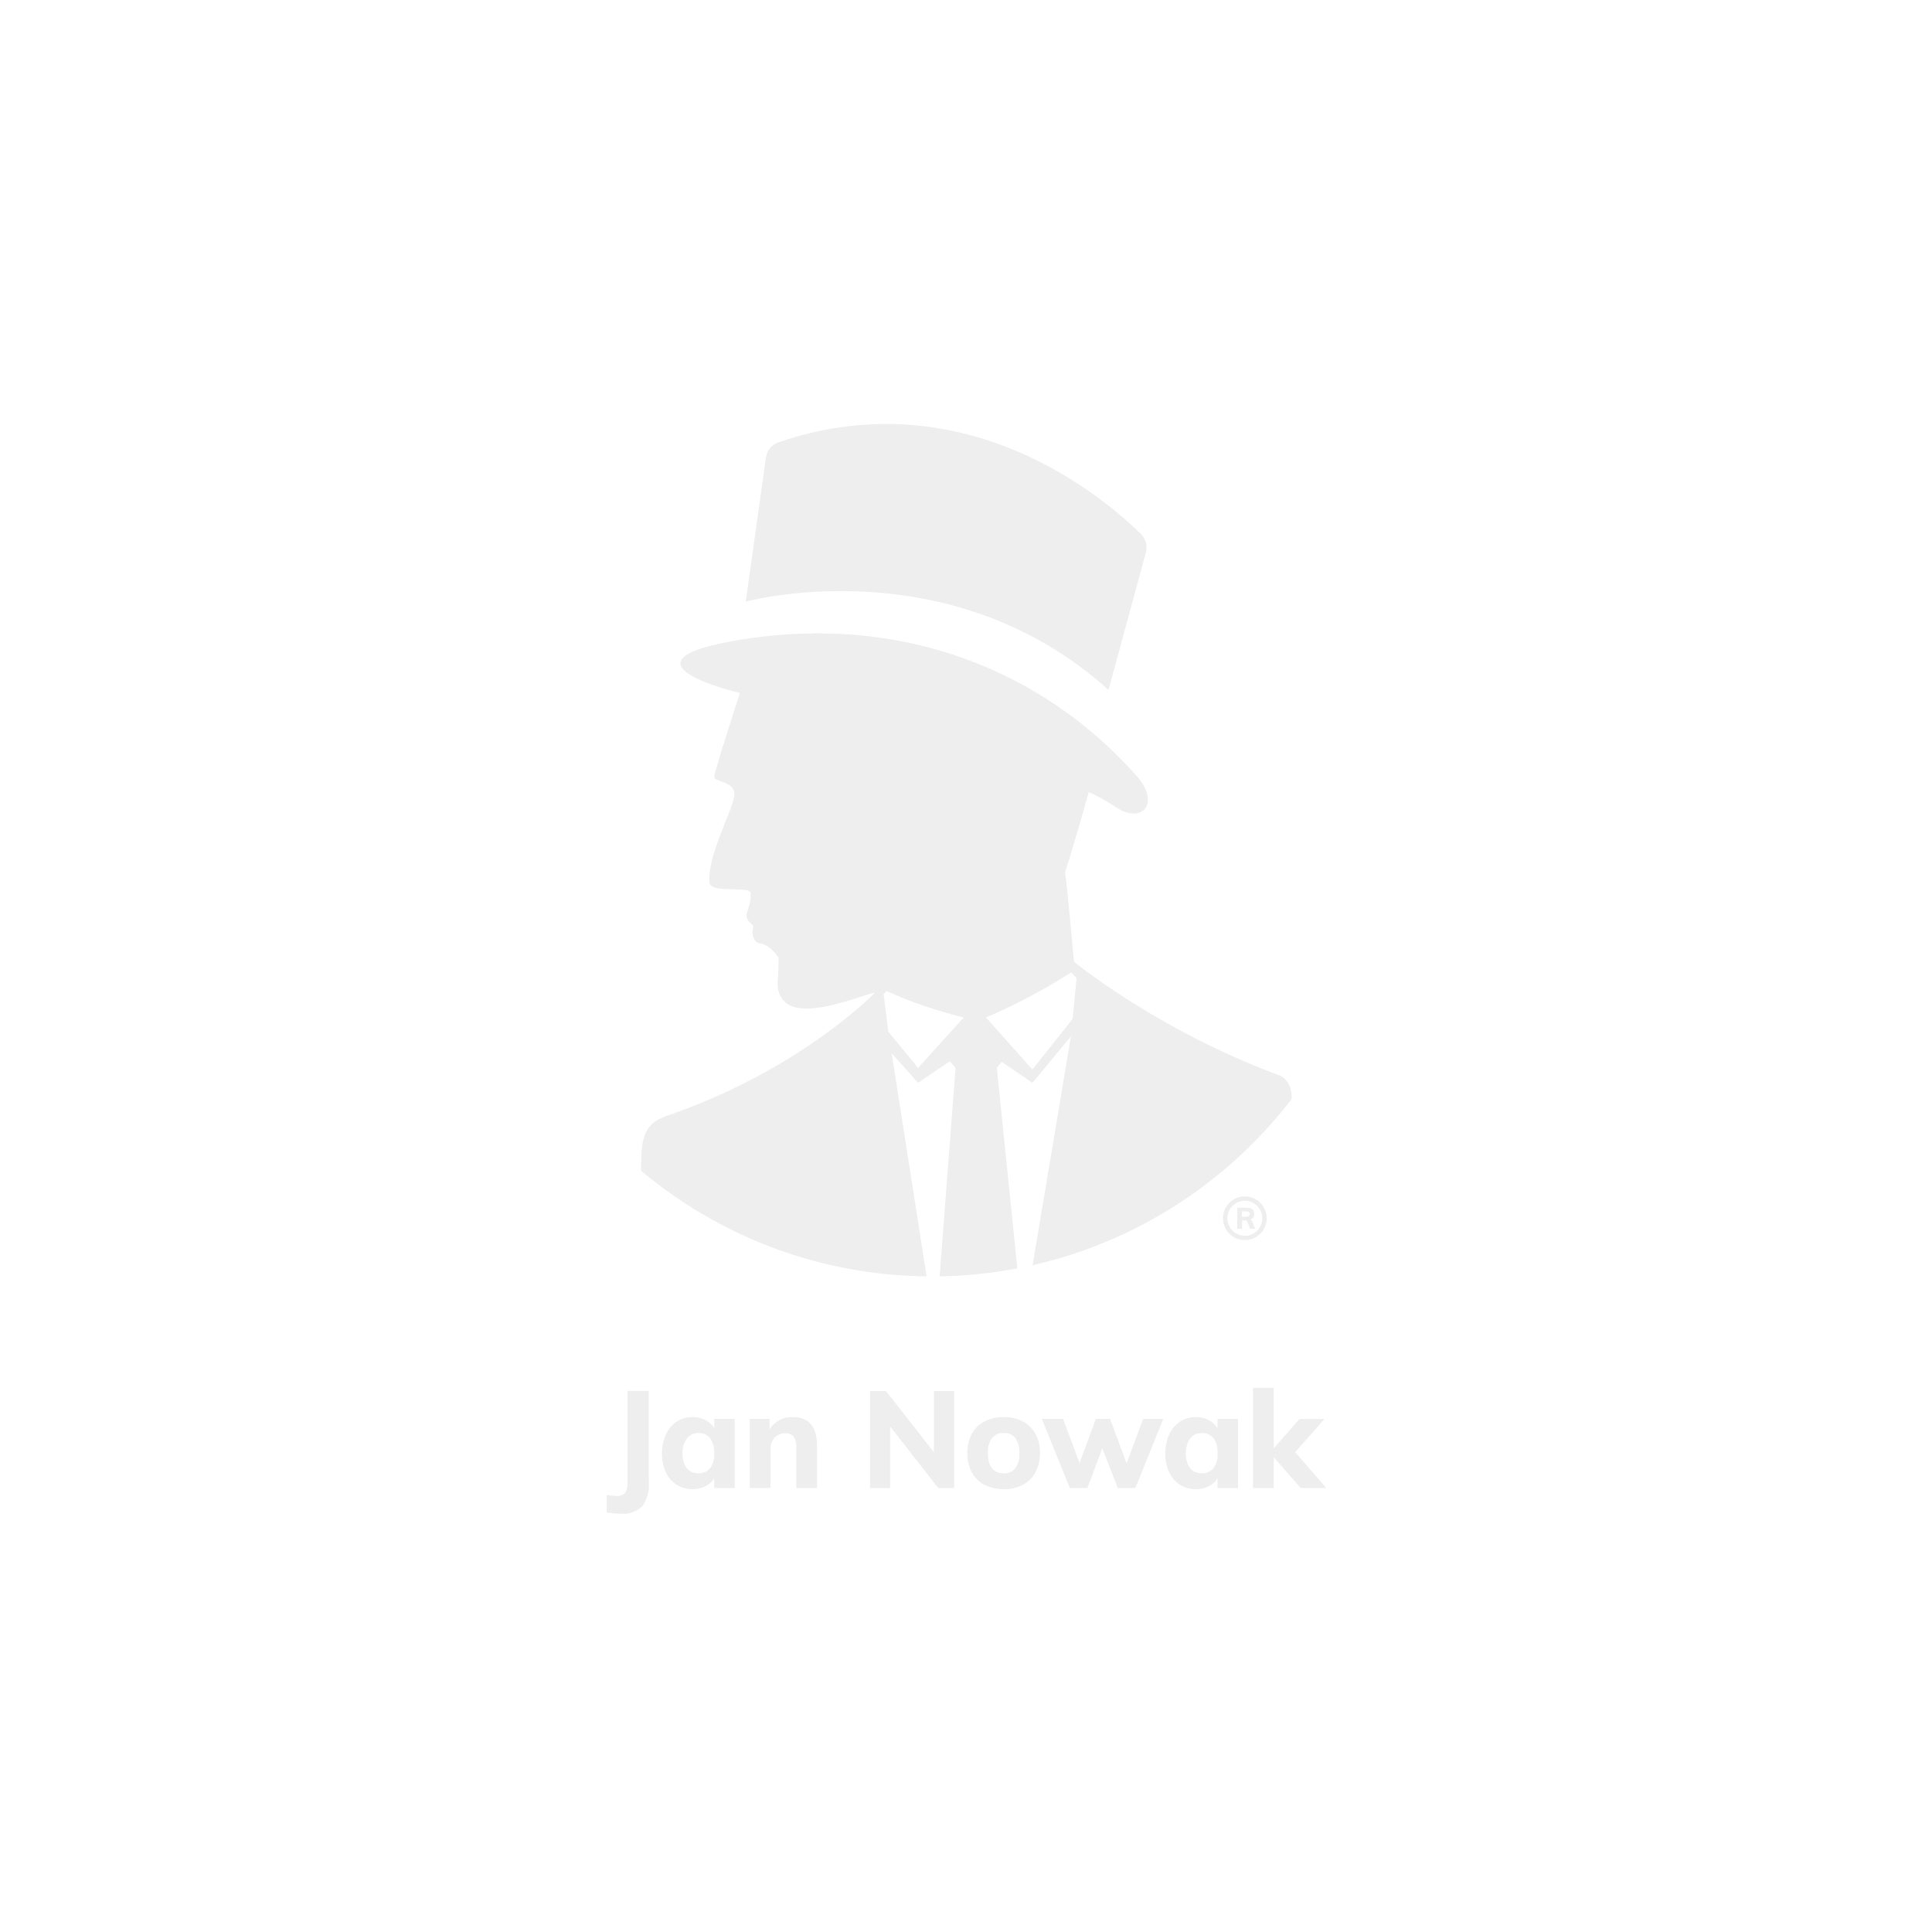 JAN NOWAK Pléh öltözőszekrény talpazaton, kétmodulos, polccal és köztes fallal KACPER 800x1800x500, modell antracit-fehér